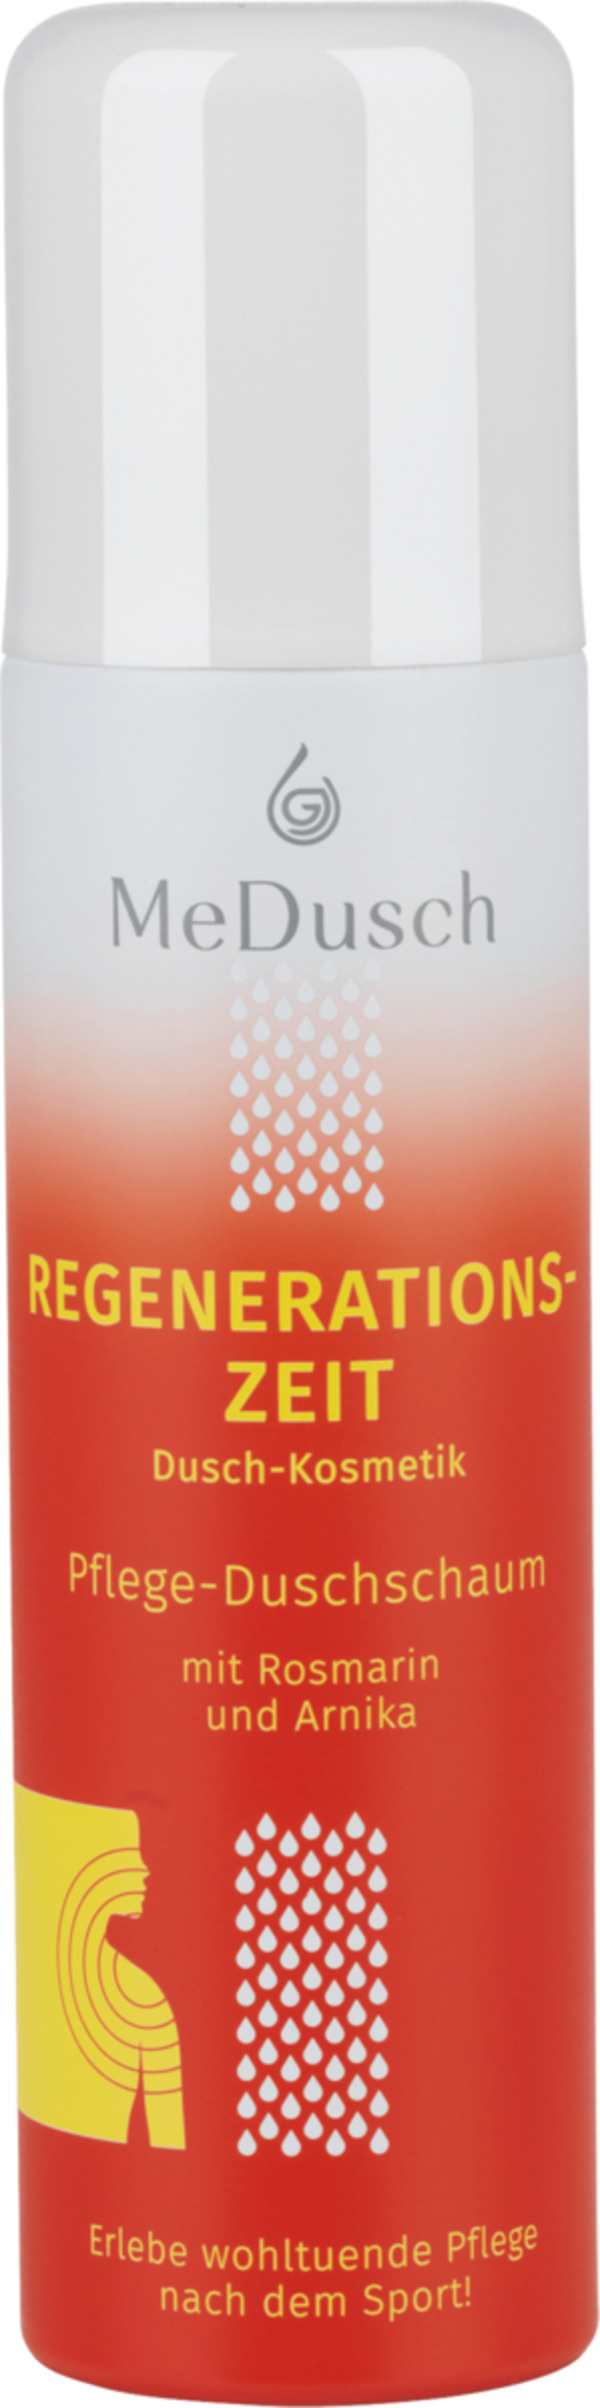 Bild 1 von MeDusch Duschschaum Regenerationszeit